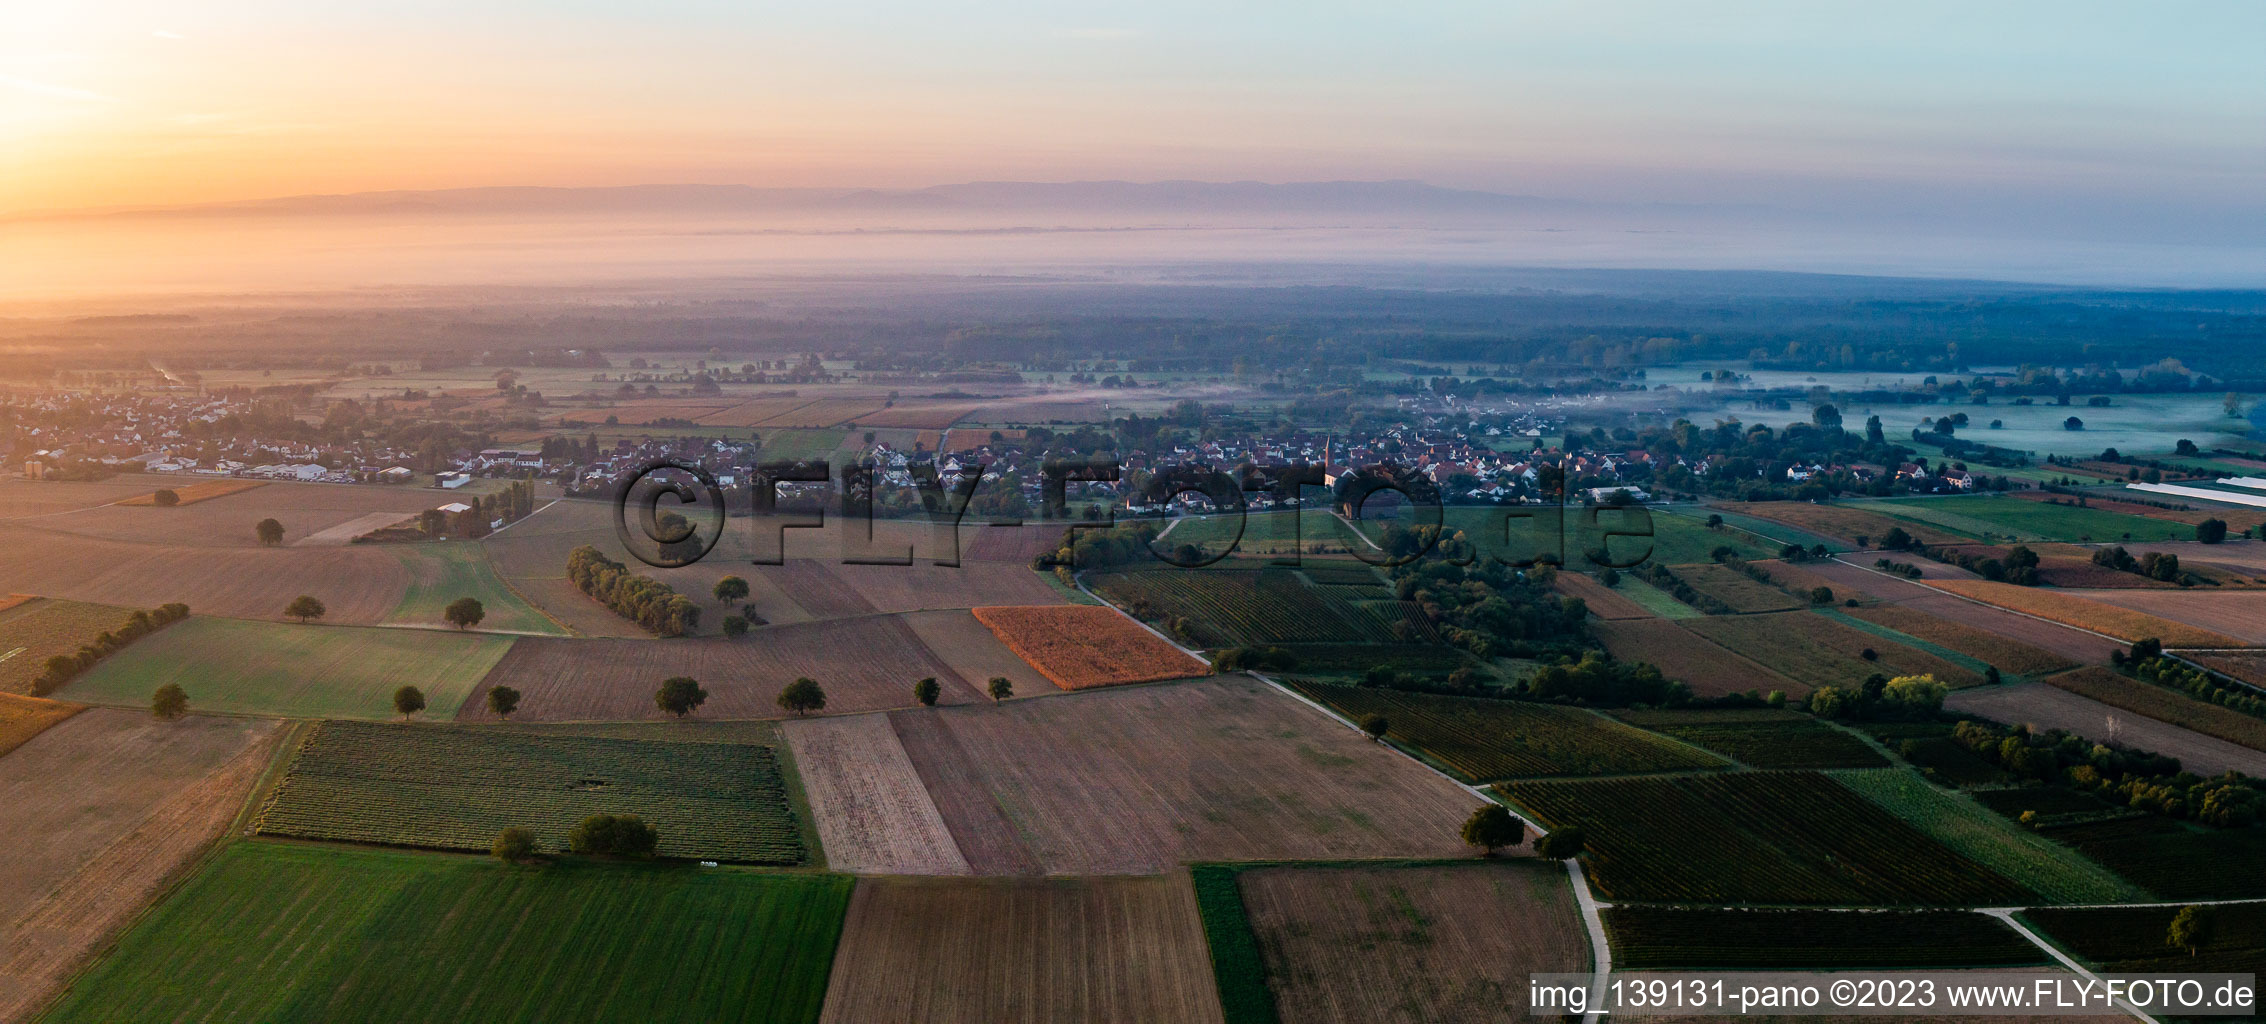 Vue aérienne de Du nord dans la brume matinale à Kapsweyer dans le département Rhénanie-Palatinat, Allemagne